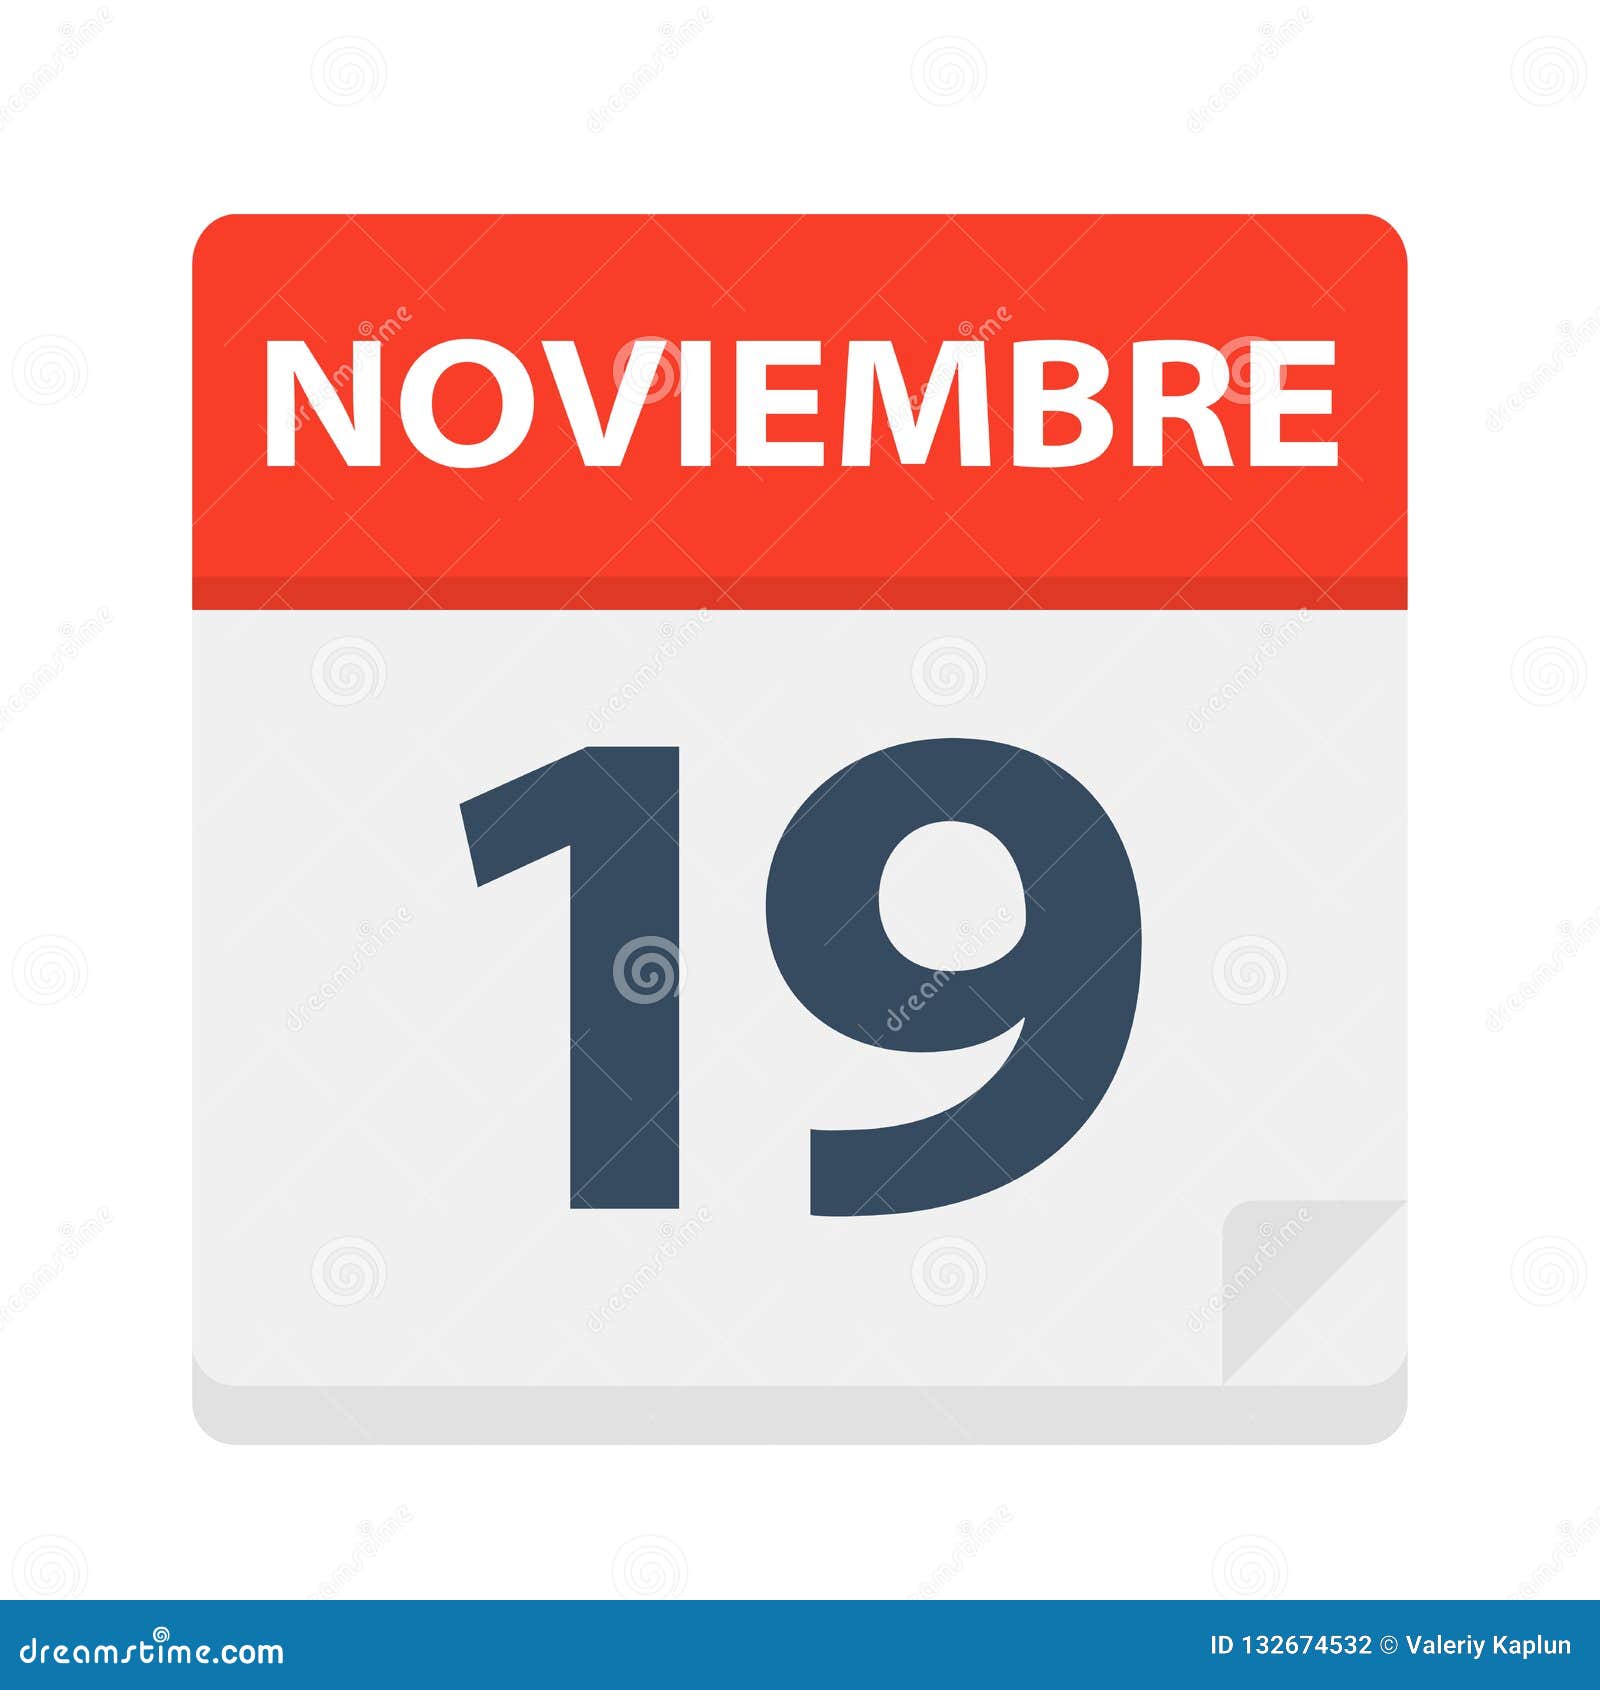 noviembre 19 - calendar icon - november 19.   of spanish calendar leaf